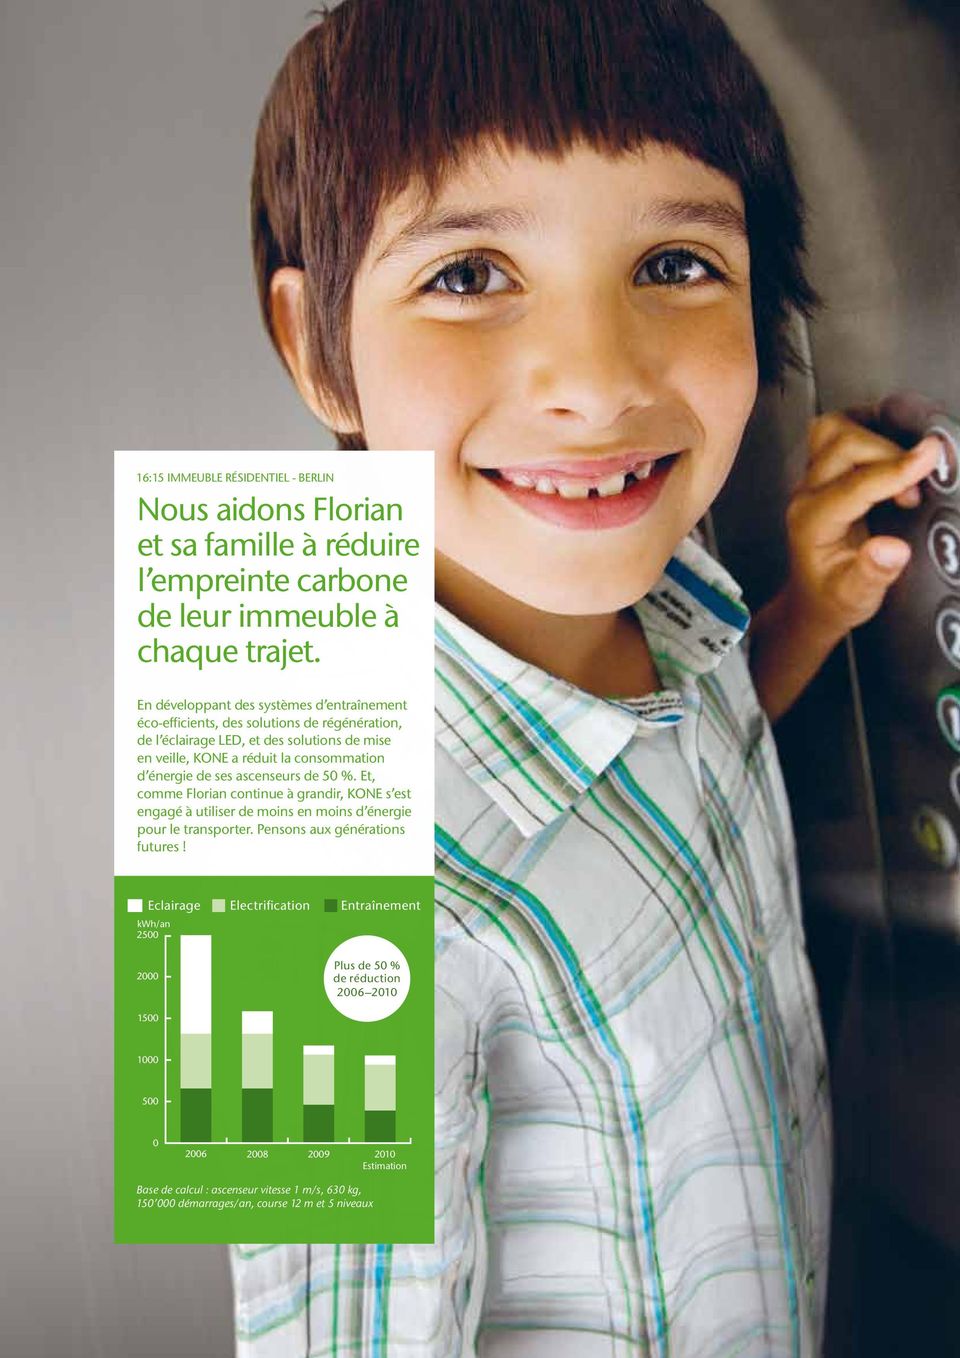 énergie de ses ascenseurs de 50 %. Et, comme Florian continue à grandir, KONE s est engagé à utiliser de moins en moins d énergie pour le transporter. Pensons aux générations futures!